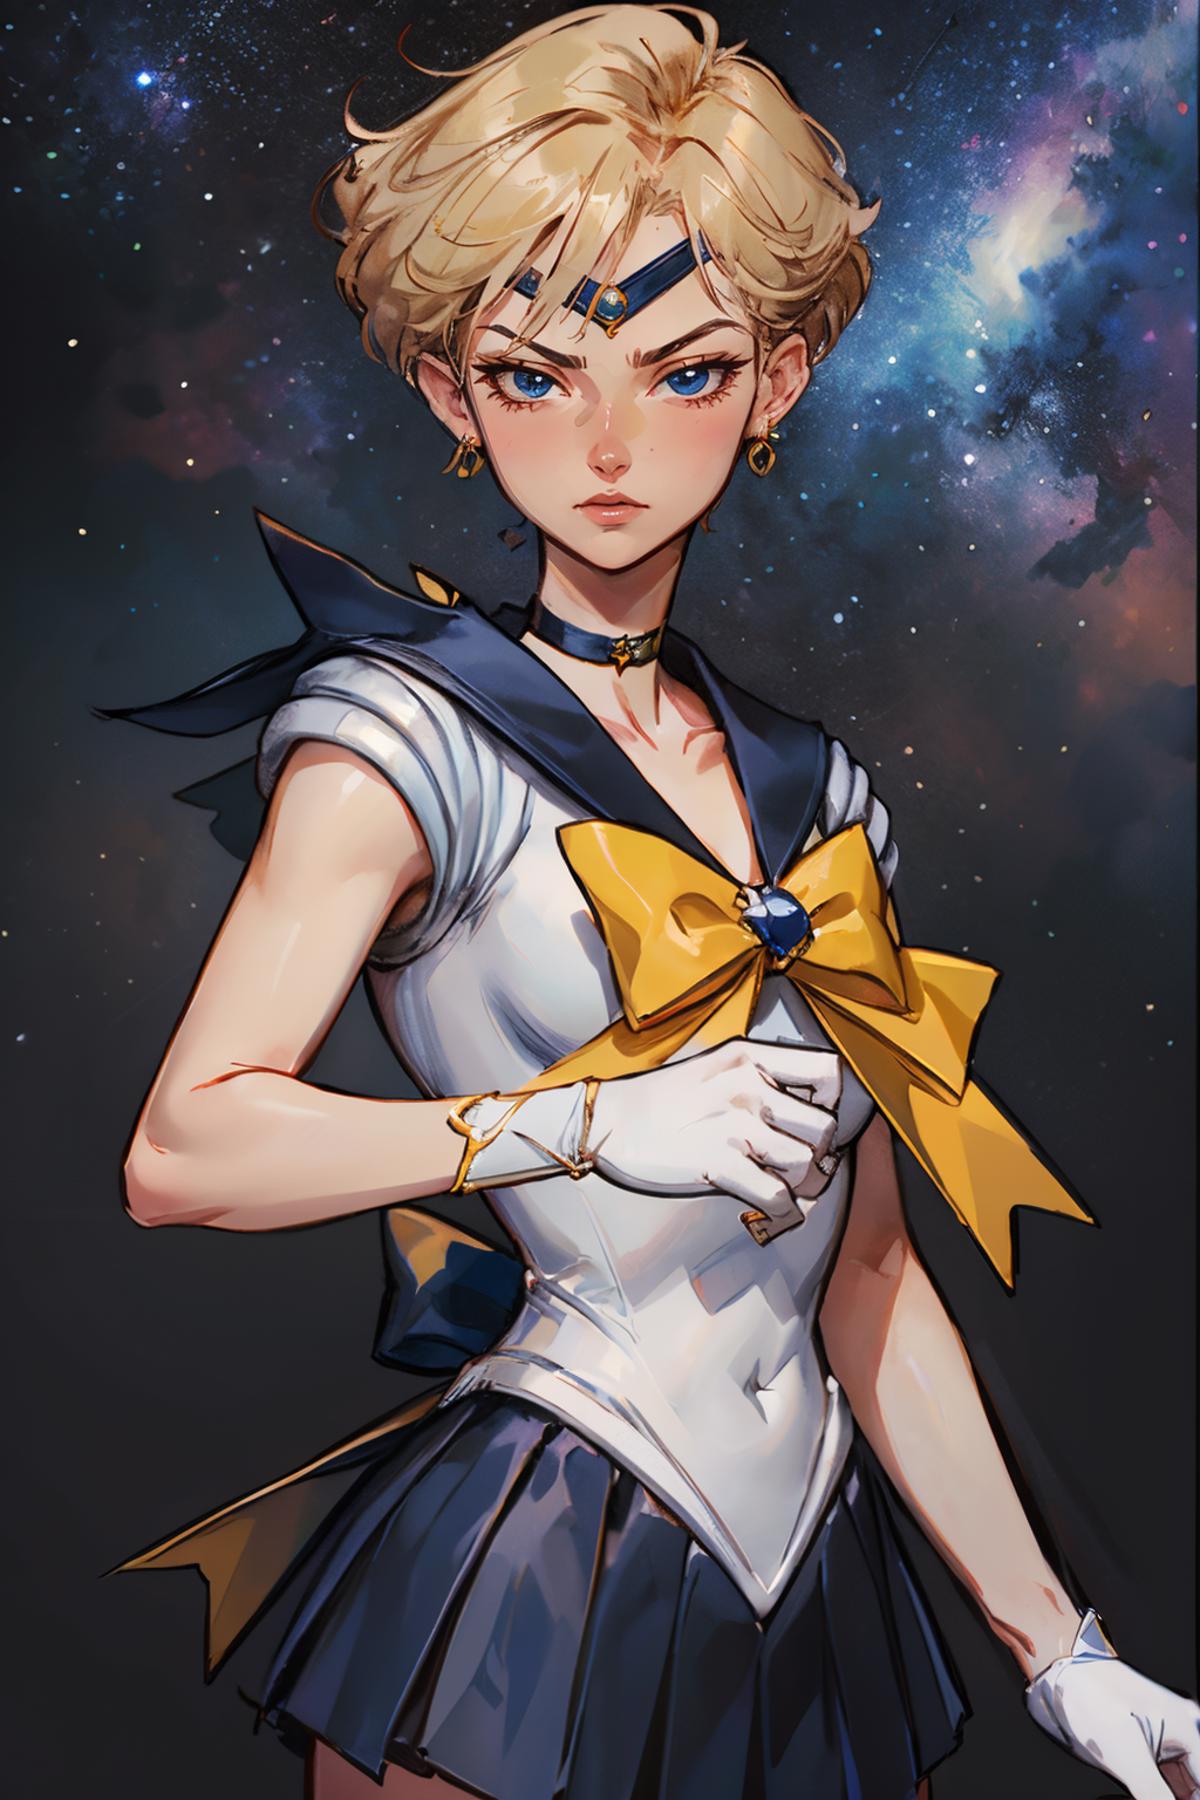 Sailor Uranus / Haruka Tenoh (Sailor Moon) - Lora image by wikkitikki